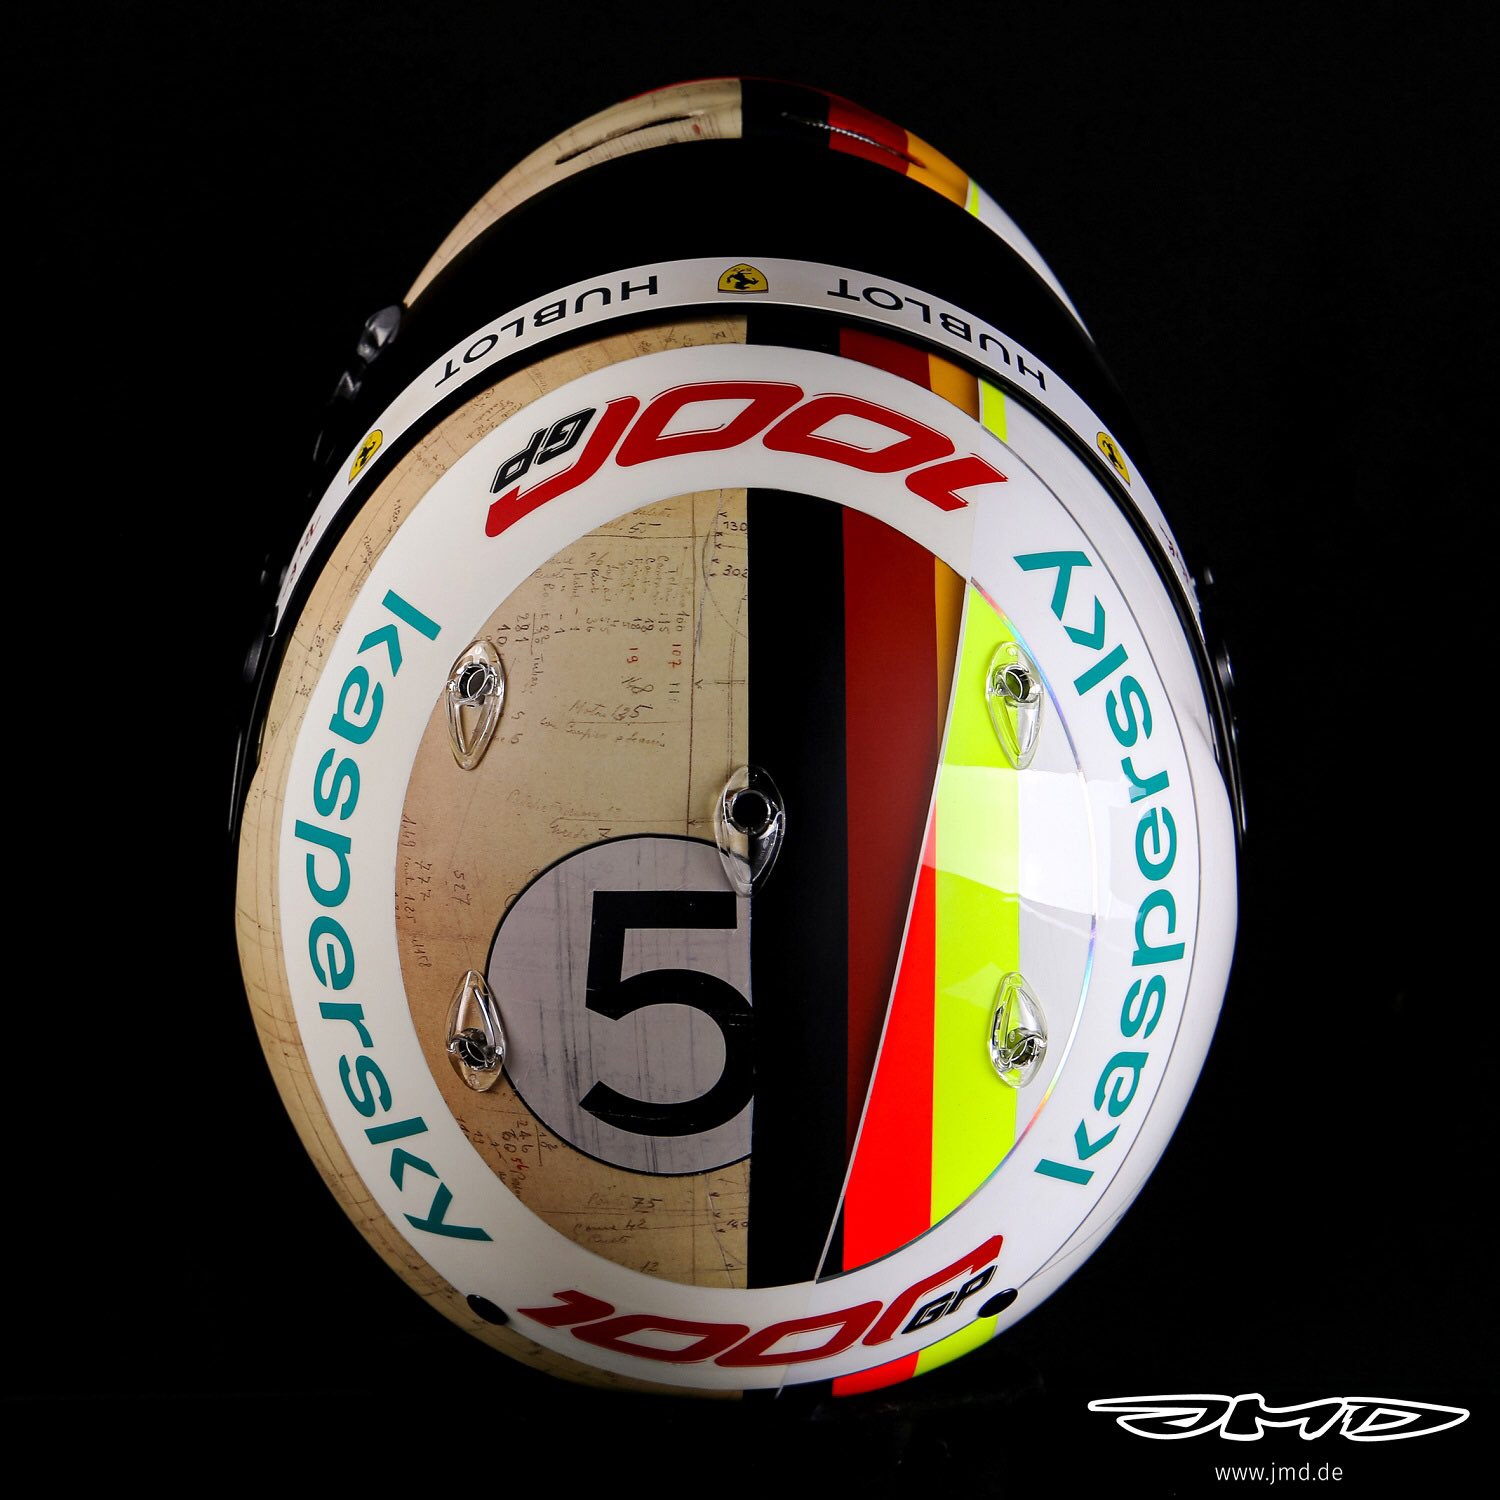 Sebastian Vettel's helmet for the 2020 Tuscan Grand Prix